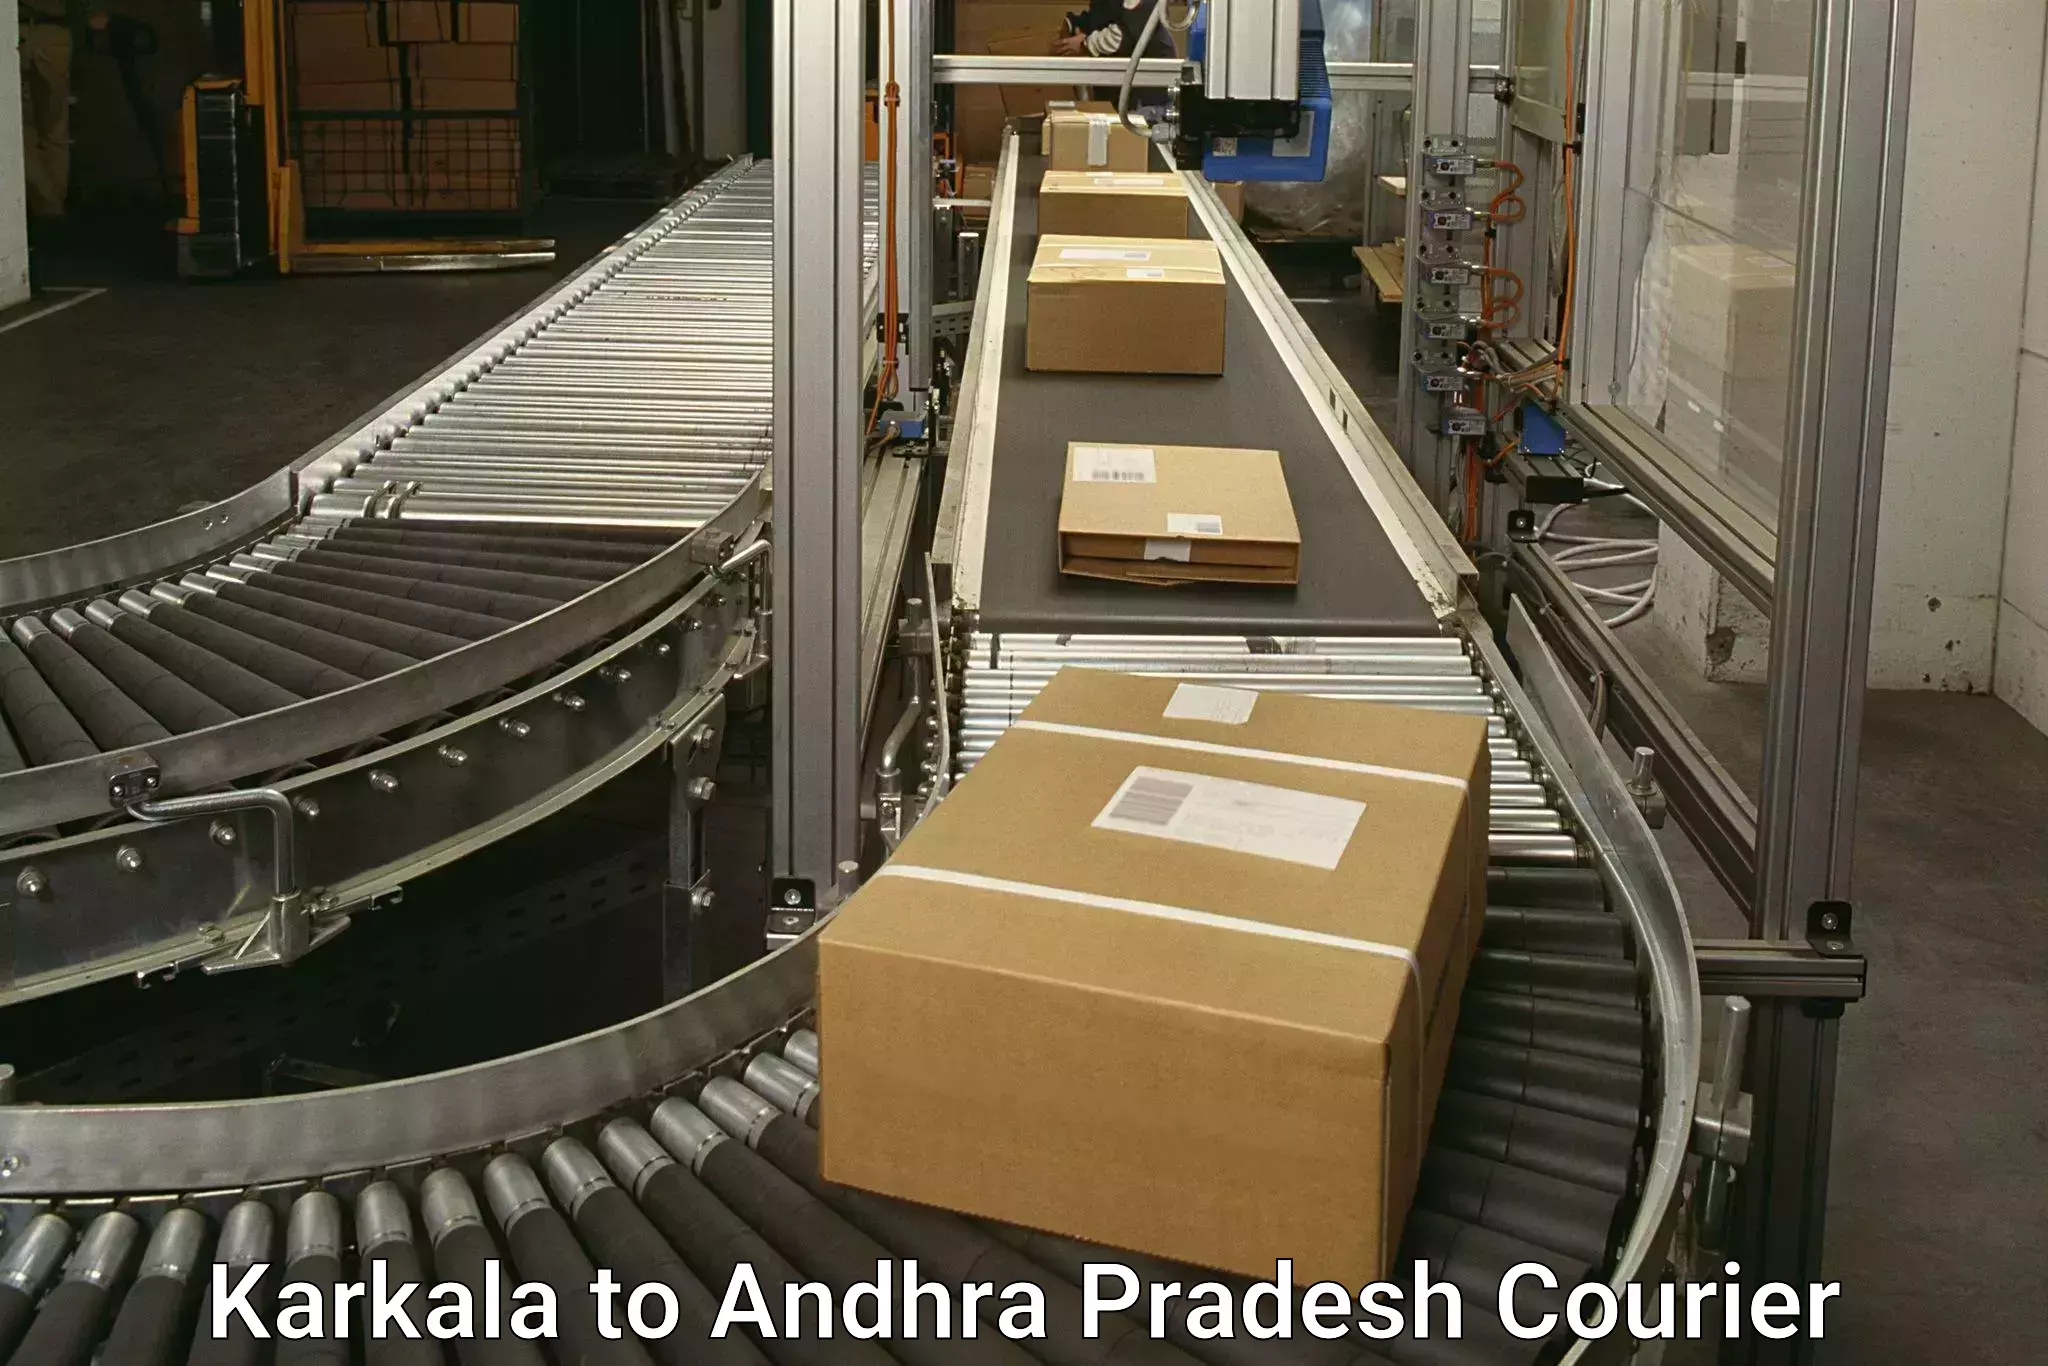 Global delivery options Karkala to Tiruvuru